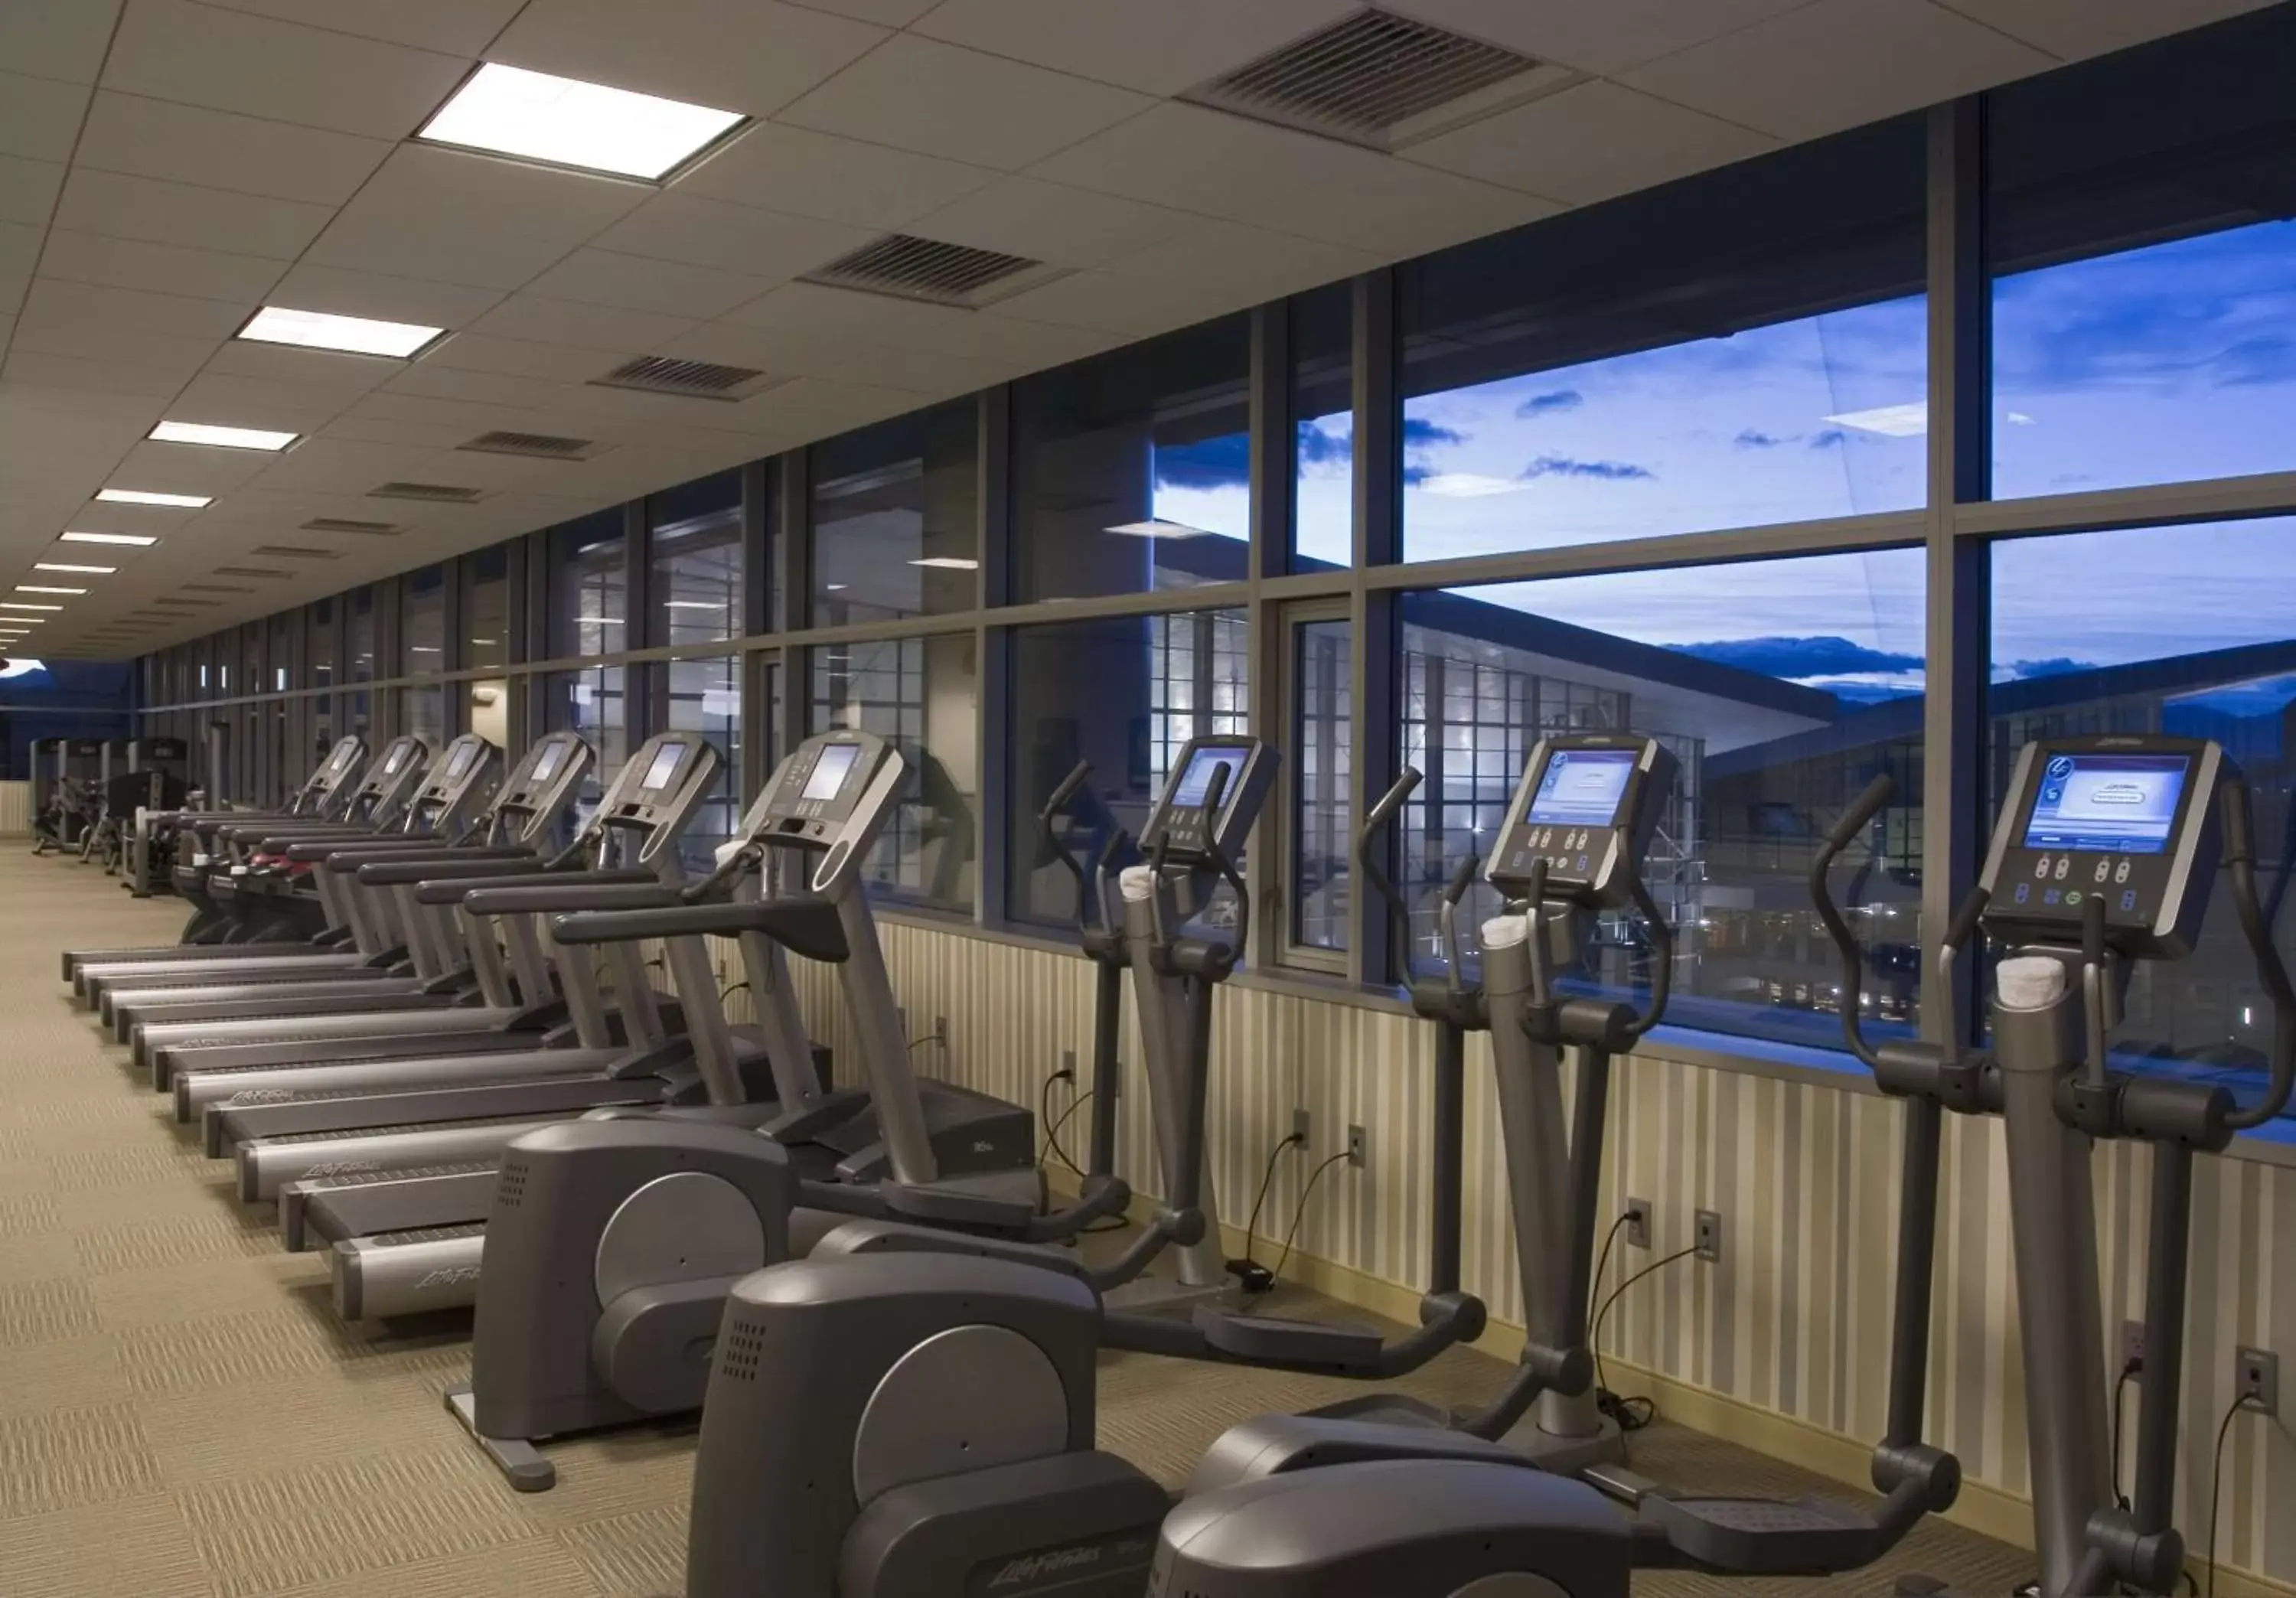 Fitness centre/facilities, Fitness Center/Facilities in Hyatt Regency Denver at Colorado Convention Center